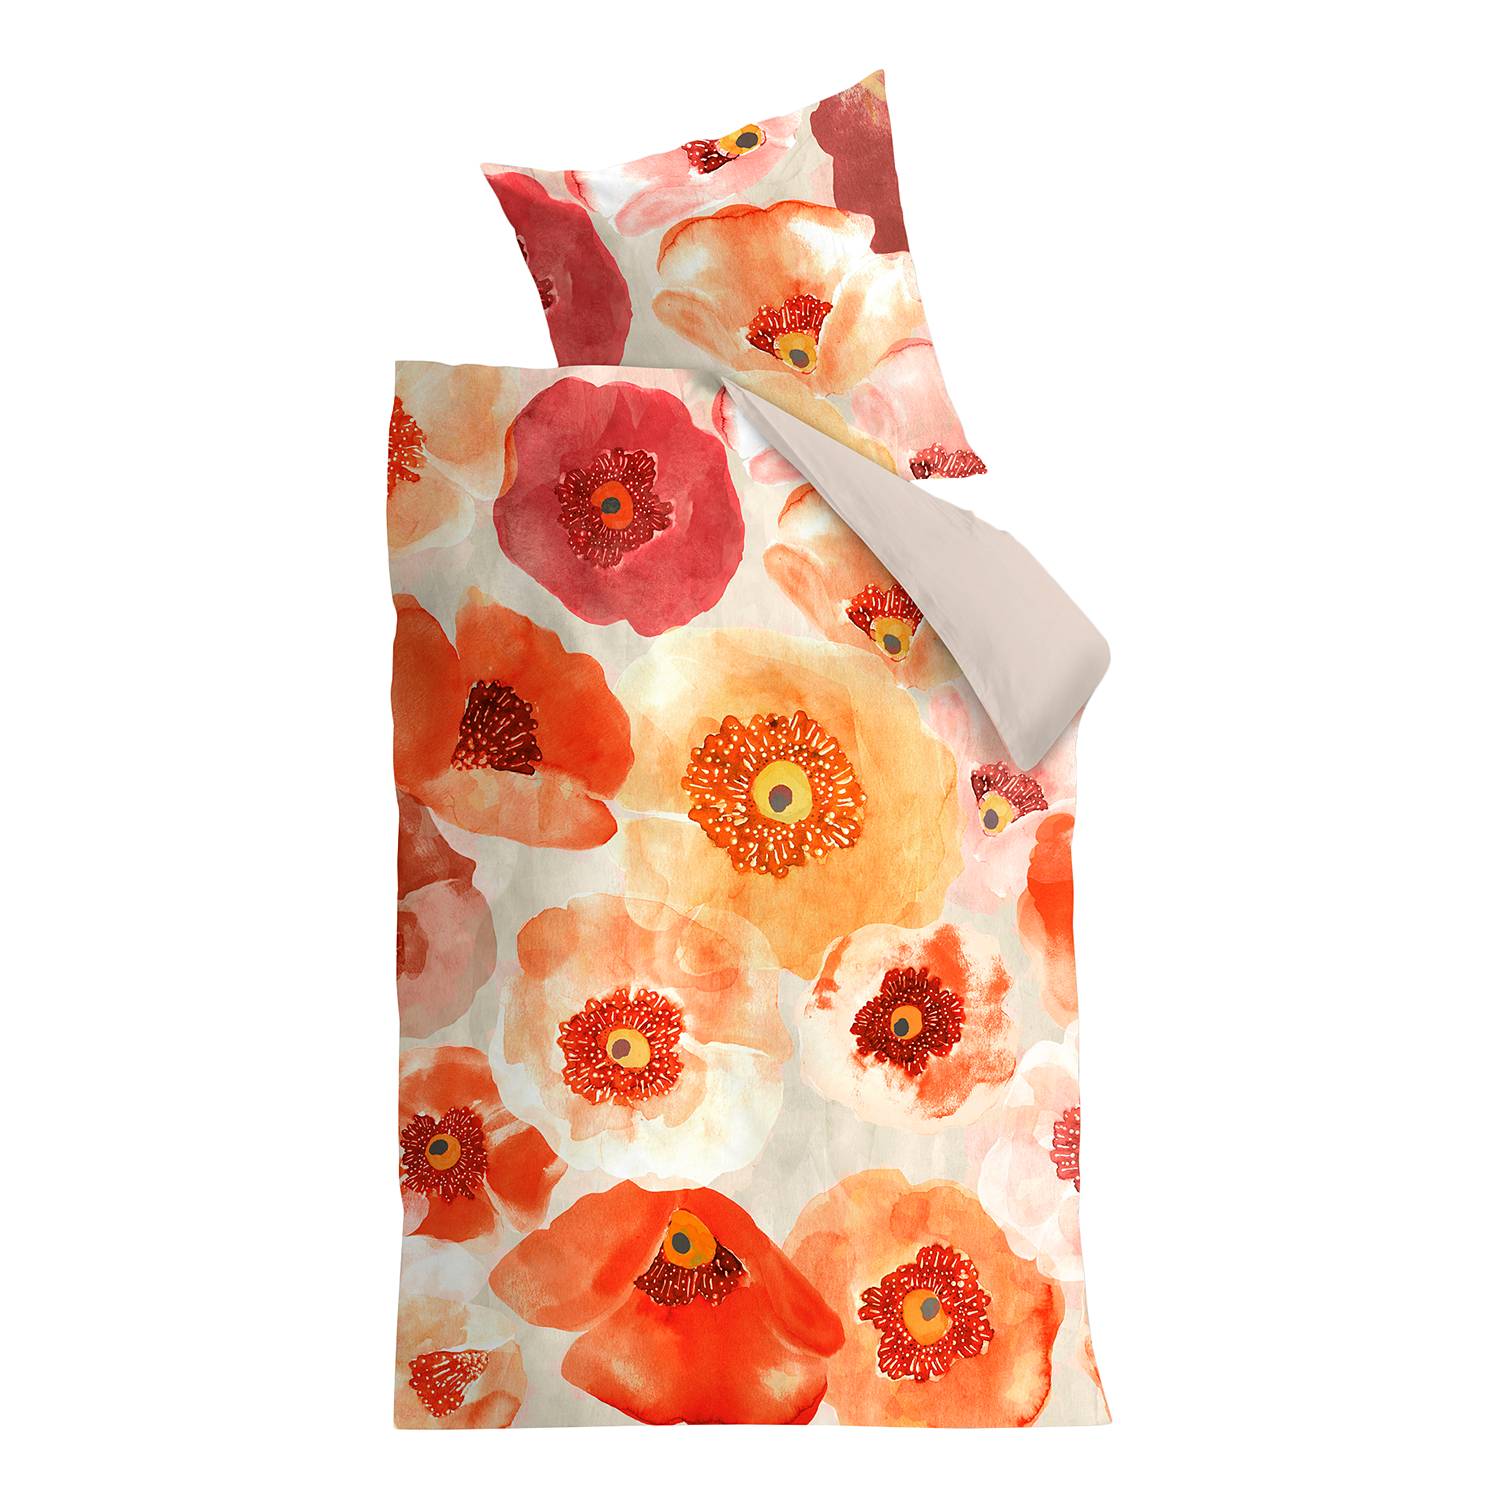 BettwÃ¤sche Oilily Faded Poppy - Baumwollstoff - Orange / Rot - 135 x 200 cm + Kissen 80 x 80 cm, OILILY